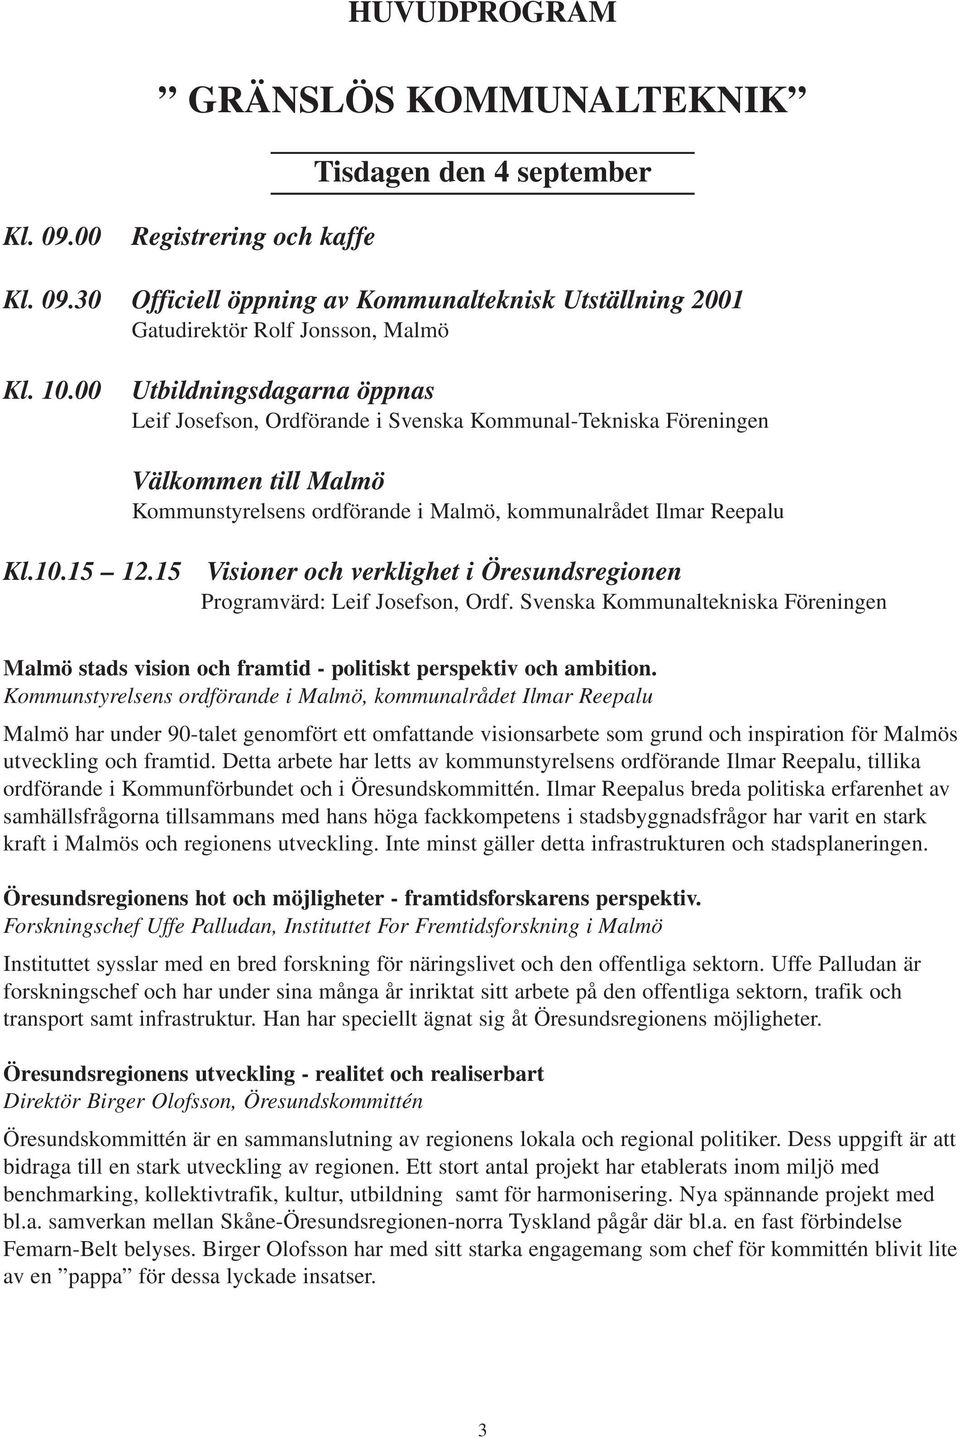 15 Visioner och verklighet i Öresundsregionen Programvärd: Leif Josefson, Ordf. Svenska Kommunaltekniska Föreningen Malmö stads vision och framtid - politiskt perspektiv och ambition.